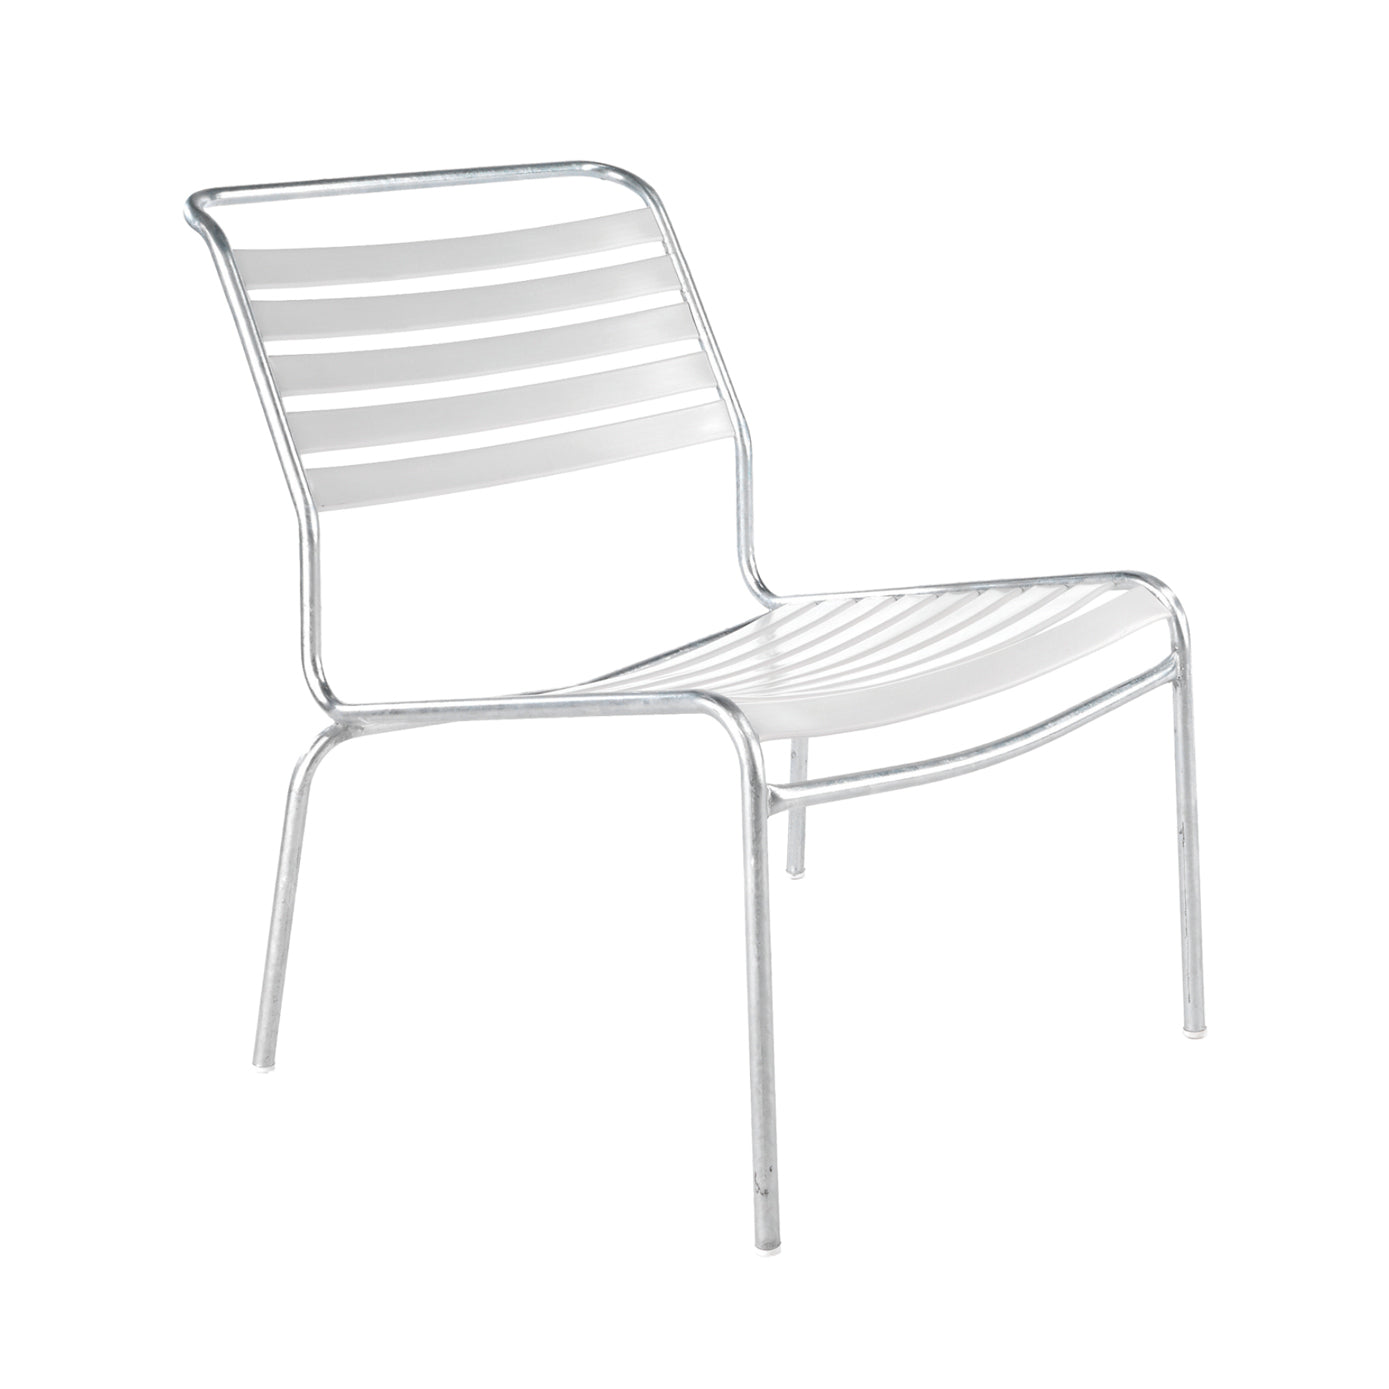 Schaffner Lättli Lounge Chair – Säntis ohne Armlehne